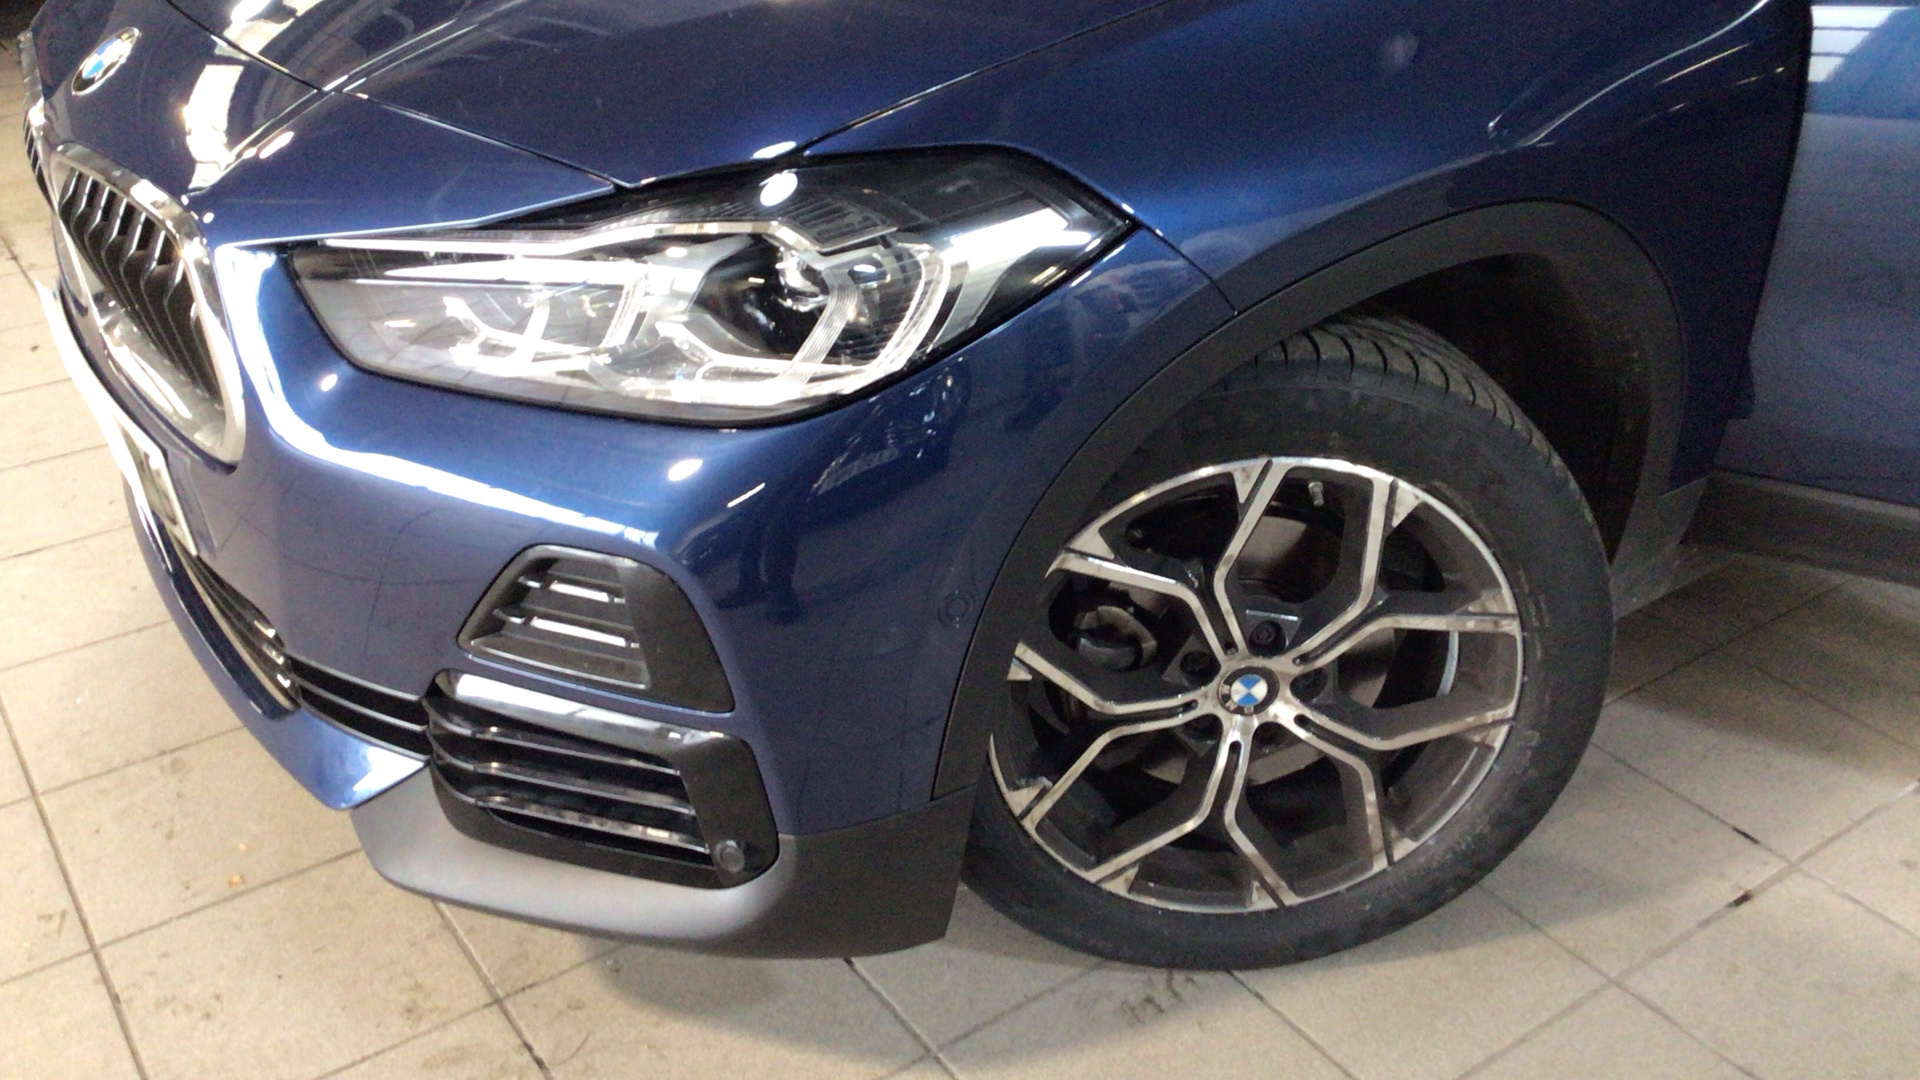 BMW X2 sDrive18d color Azul. Año 2021. 110KW(150CV). Diésel. En concesionario BYmyCAR Madrid - Alcalá de Madrid